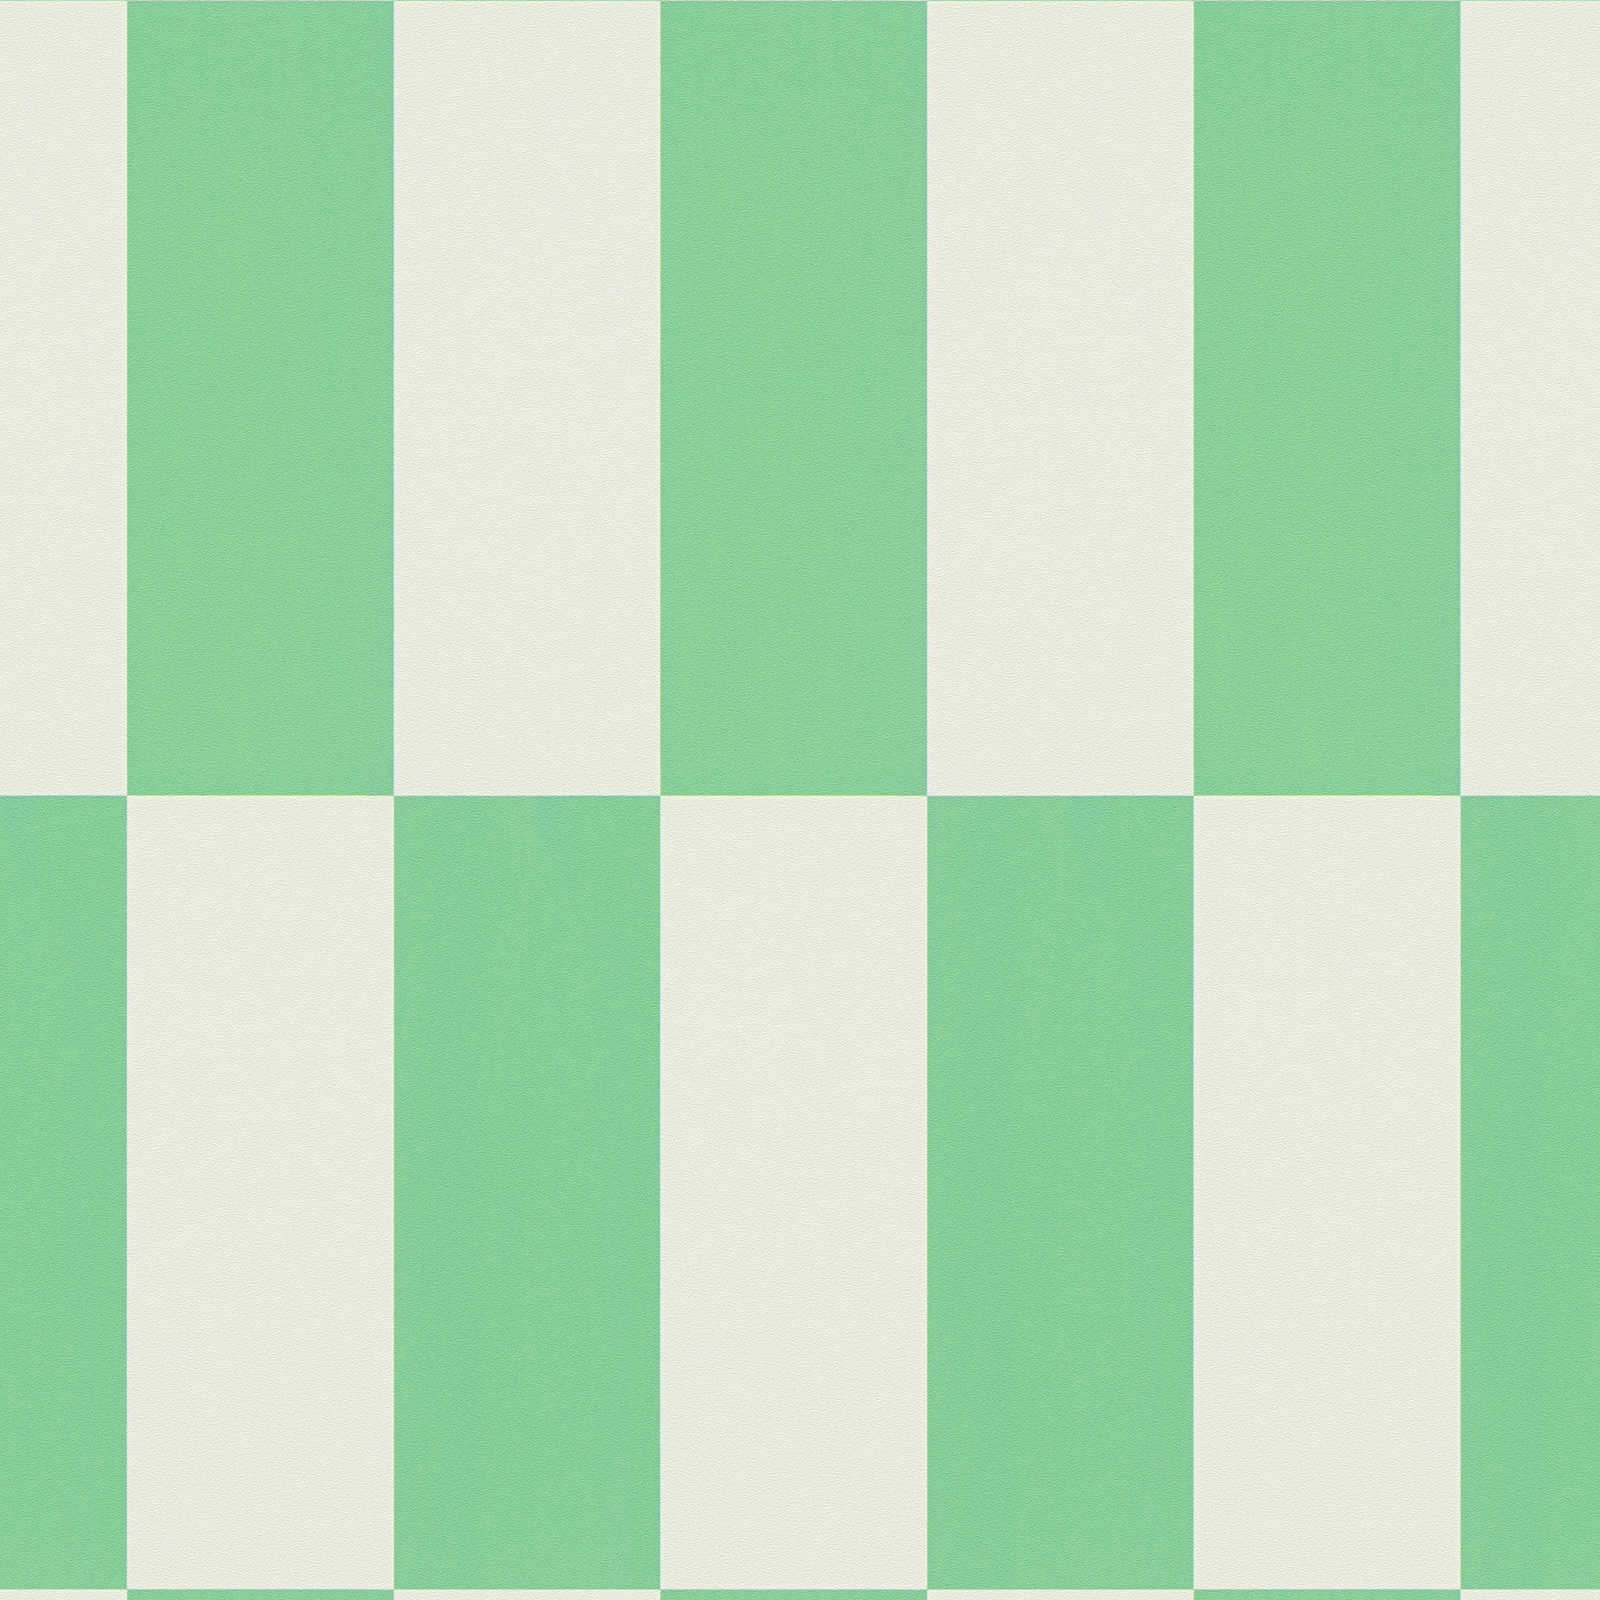             Carta da parati con motivo grafico a quadretti - verde, bianco
        